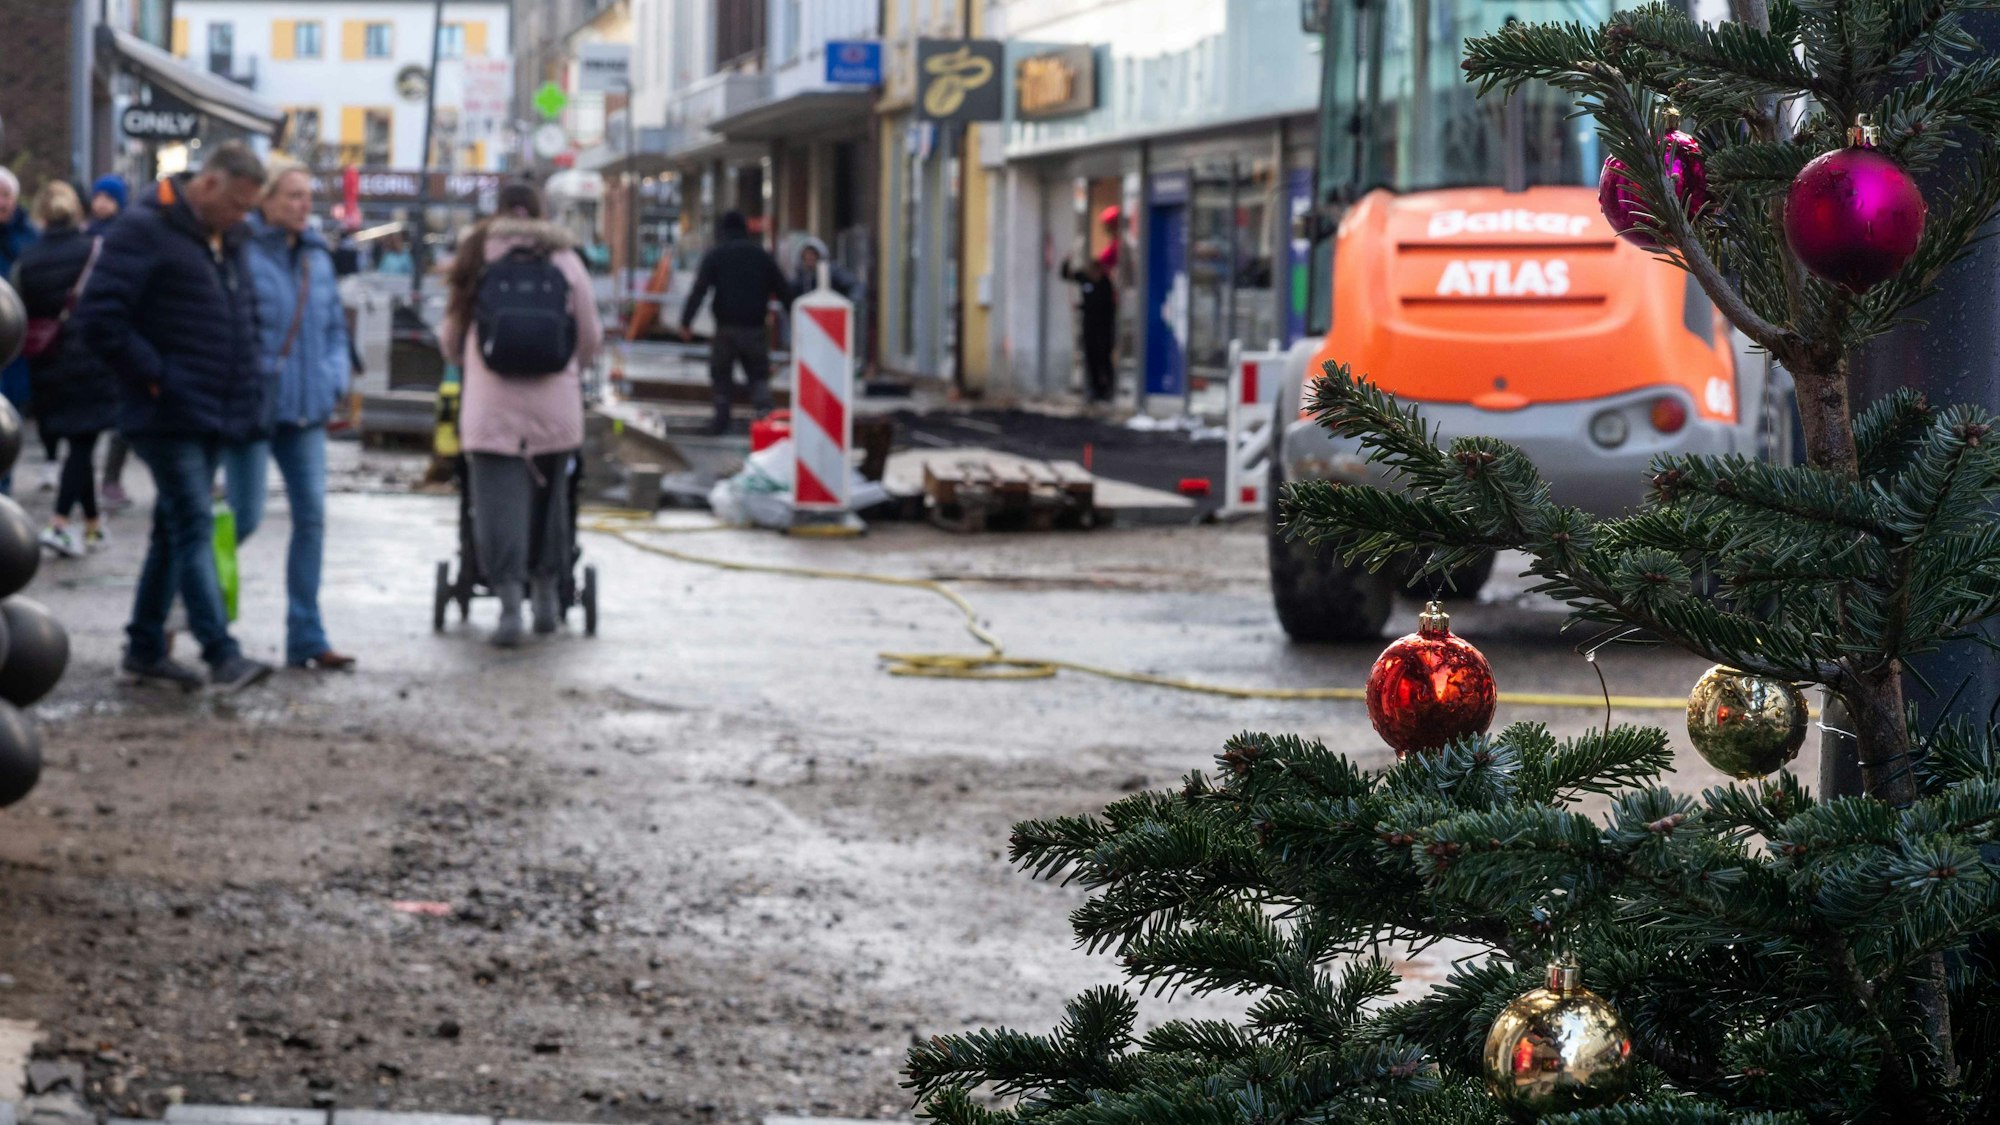 Das Bild zeigt die Euskirchener Fußgängerzone. Am rechten Bildrand ist ein Weihnachtsbaum zu sehen, im Hintergrund die Baustelle an der Neustraße.